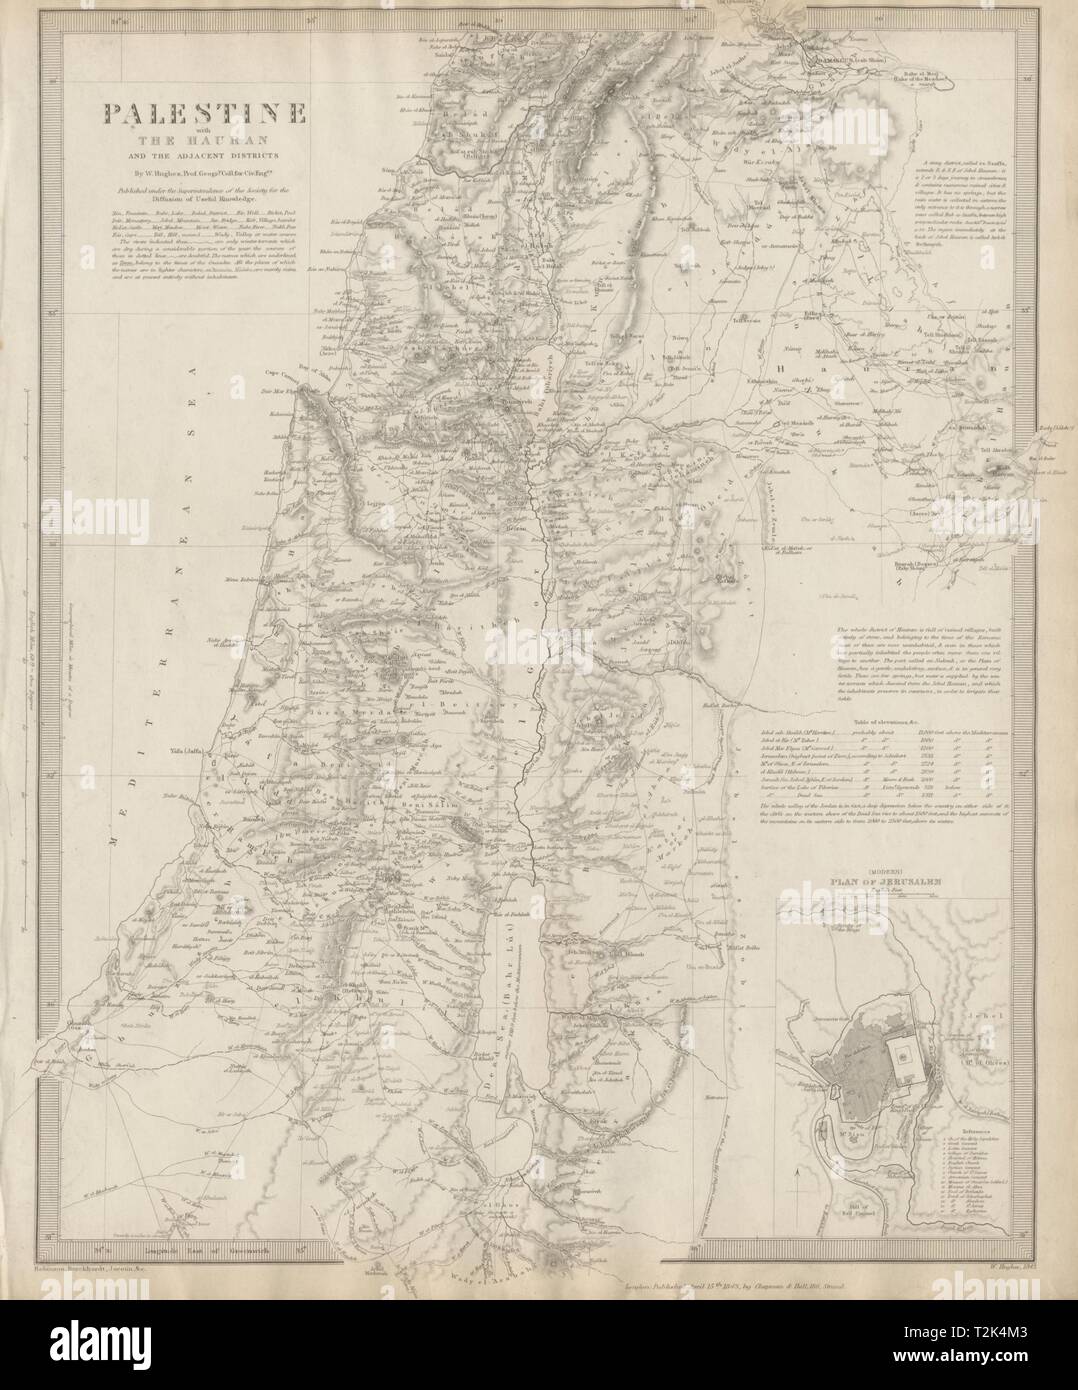 Palästina. Hauran. Israel Jordanien Syrien Libanon Jerusalem city plan SDUK 1844 Karte Stockfoto